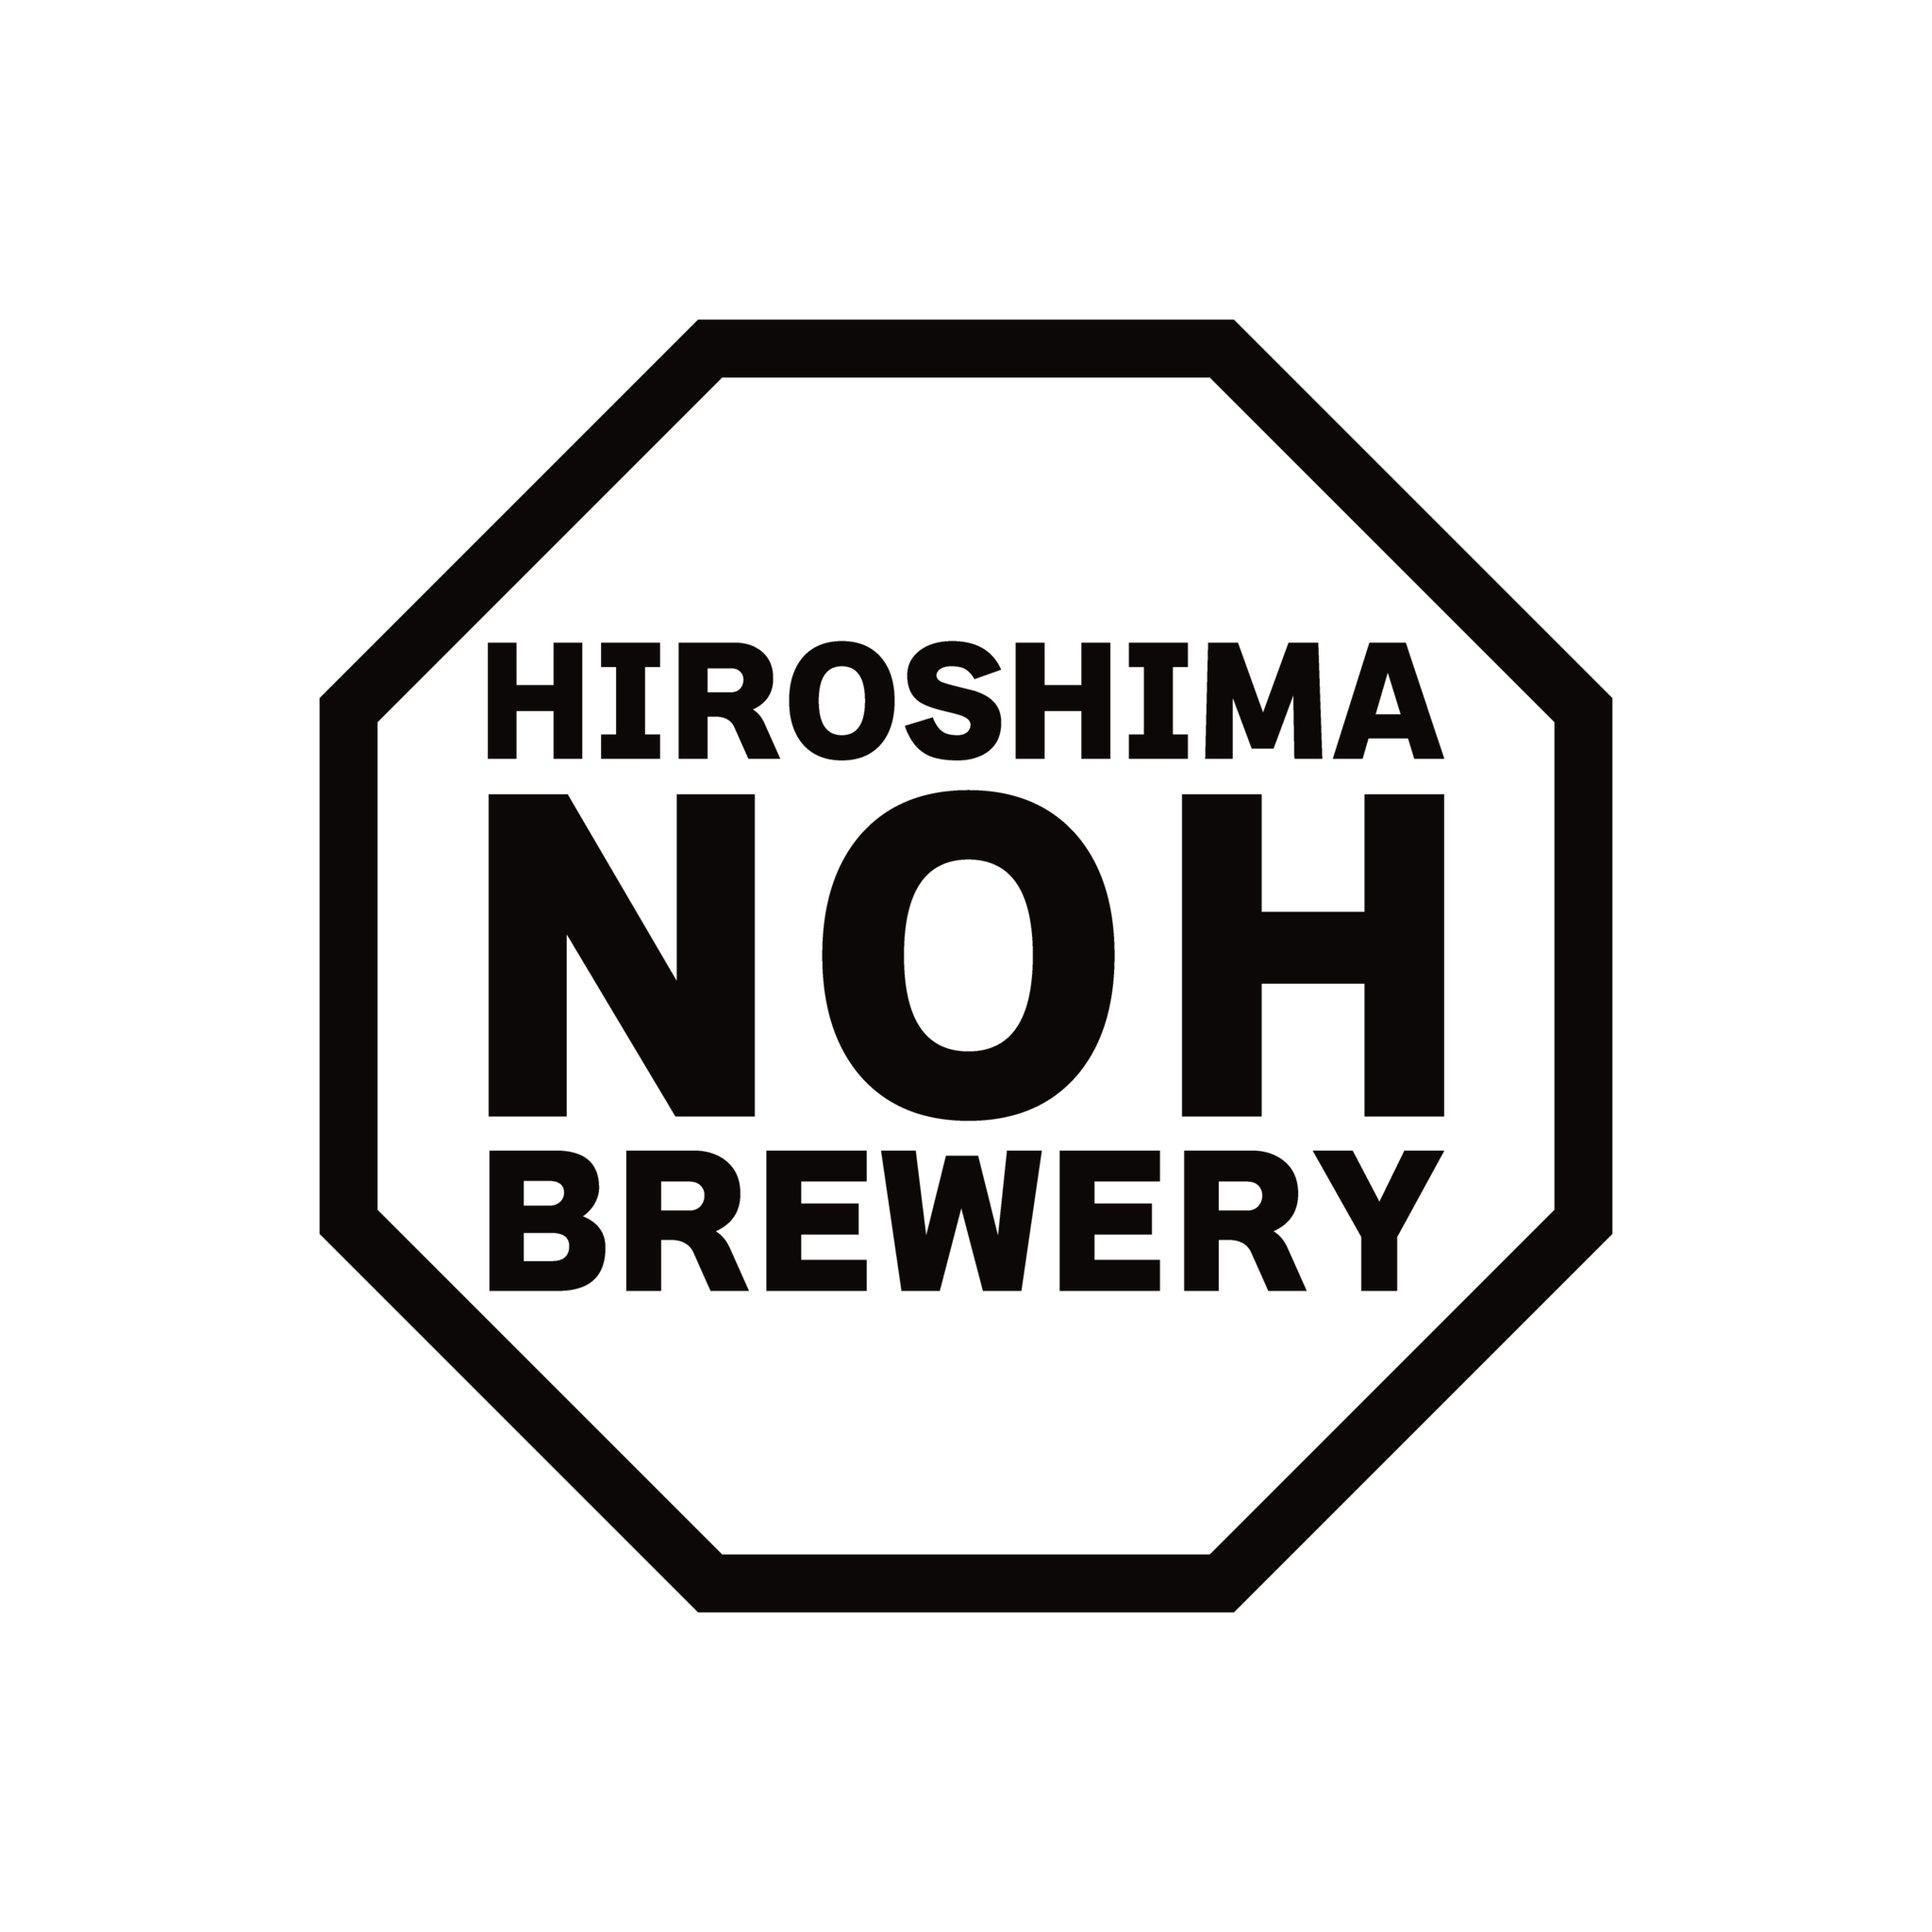 HIROSHIMA NOH BREWERY